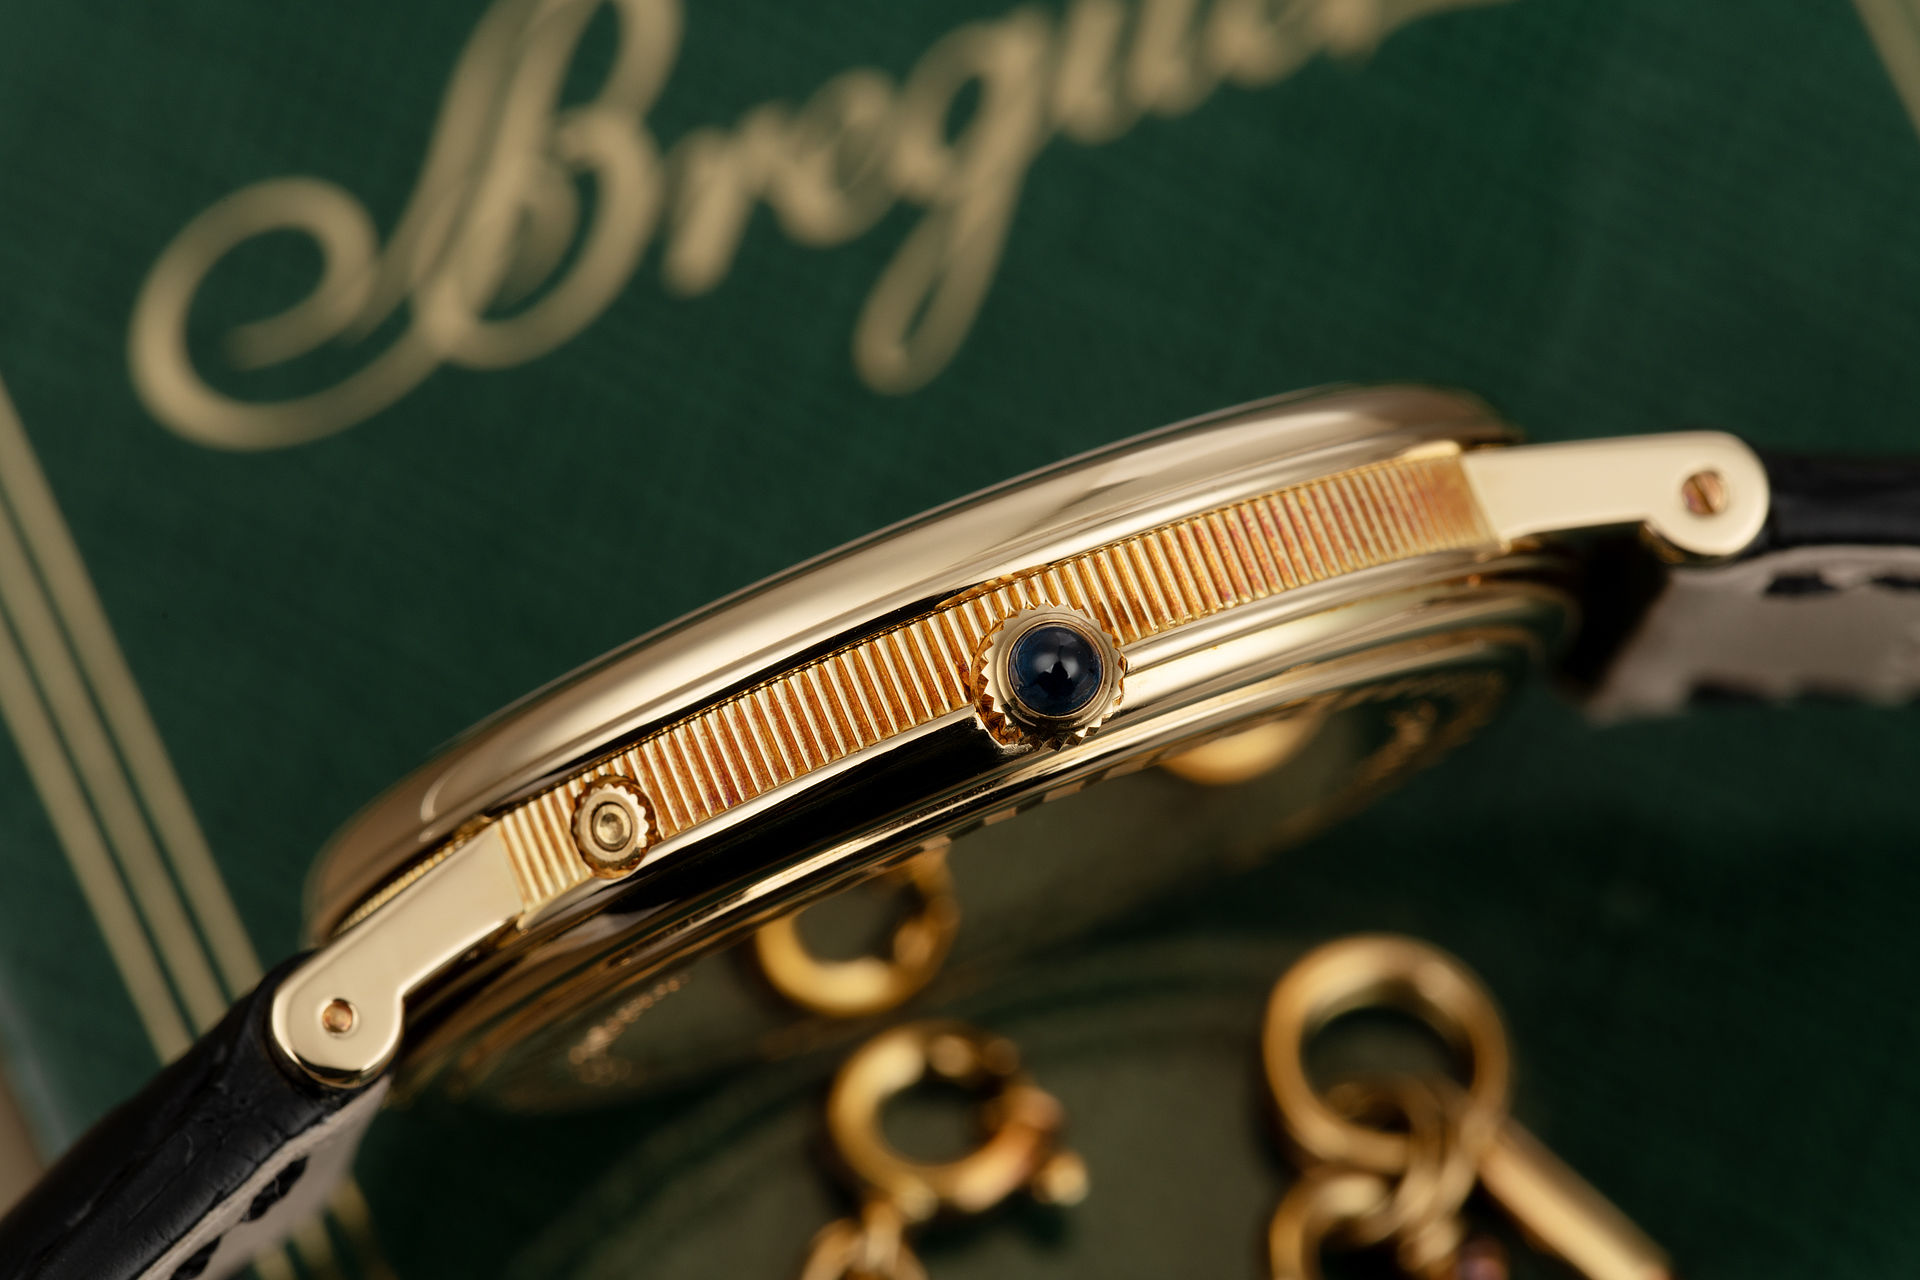 ref 3050BA | 18ct Yellow Gold 'Full Set' | Breguet Classique Perpetual Calendar